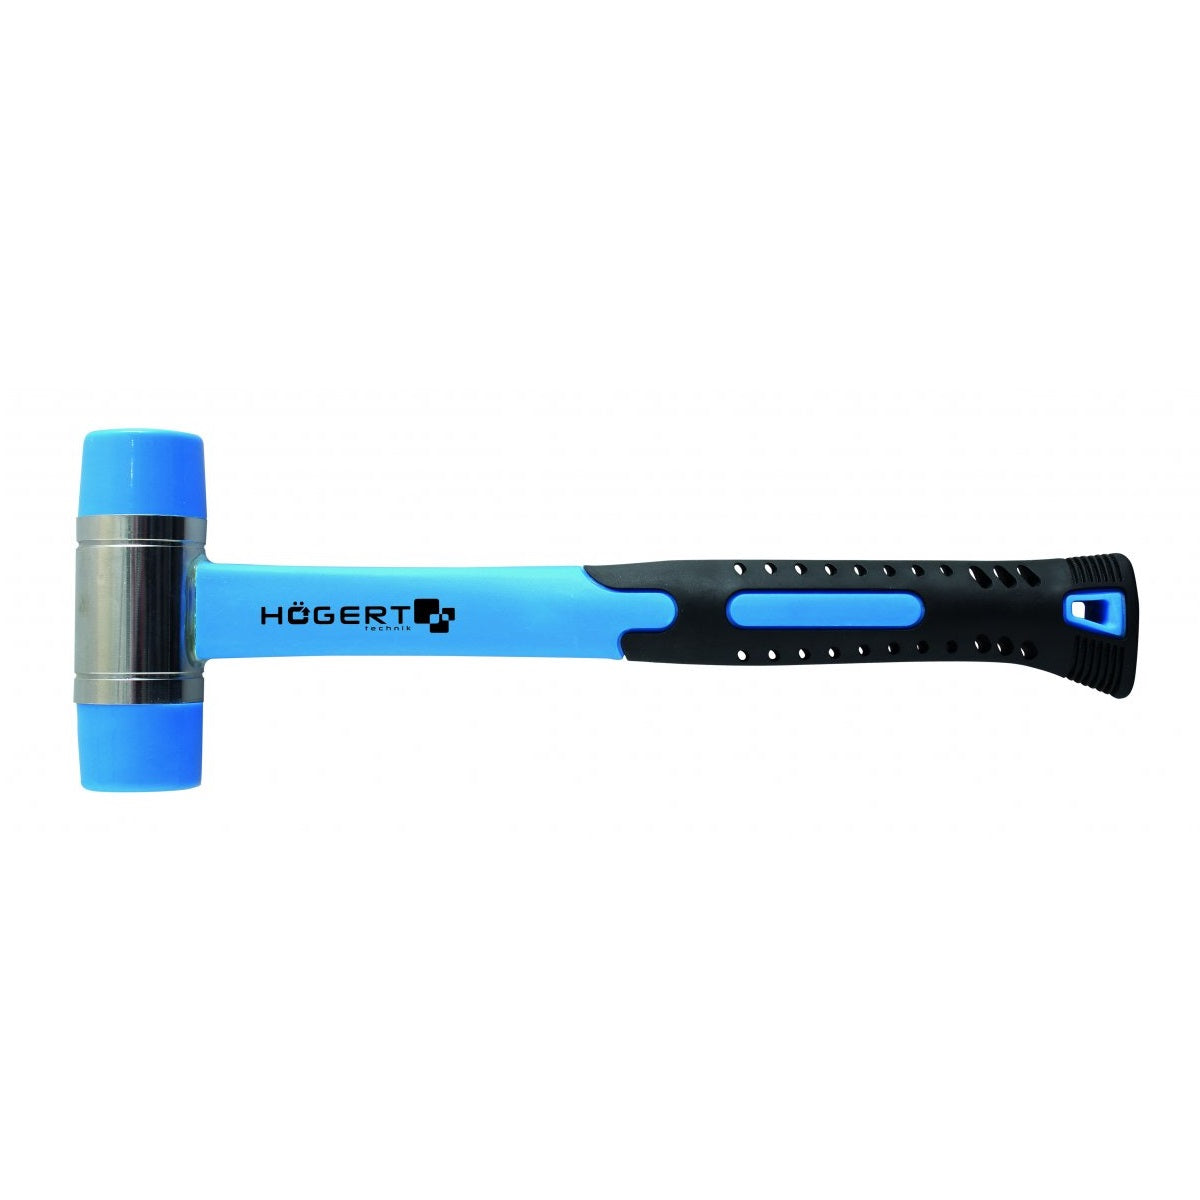 Hoegert Technik Soft Face Hammer with Fiberglass Handle 35mm HT3B048 (Pack of 2)